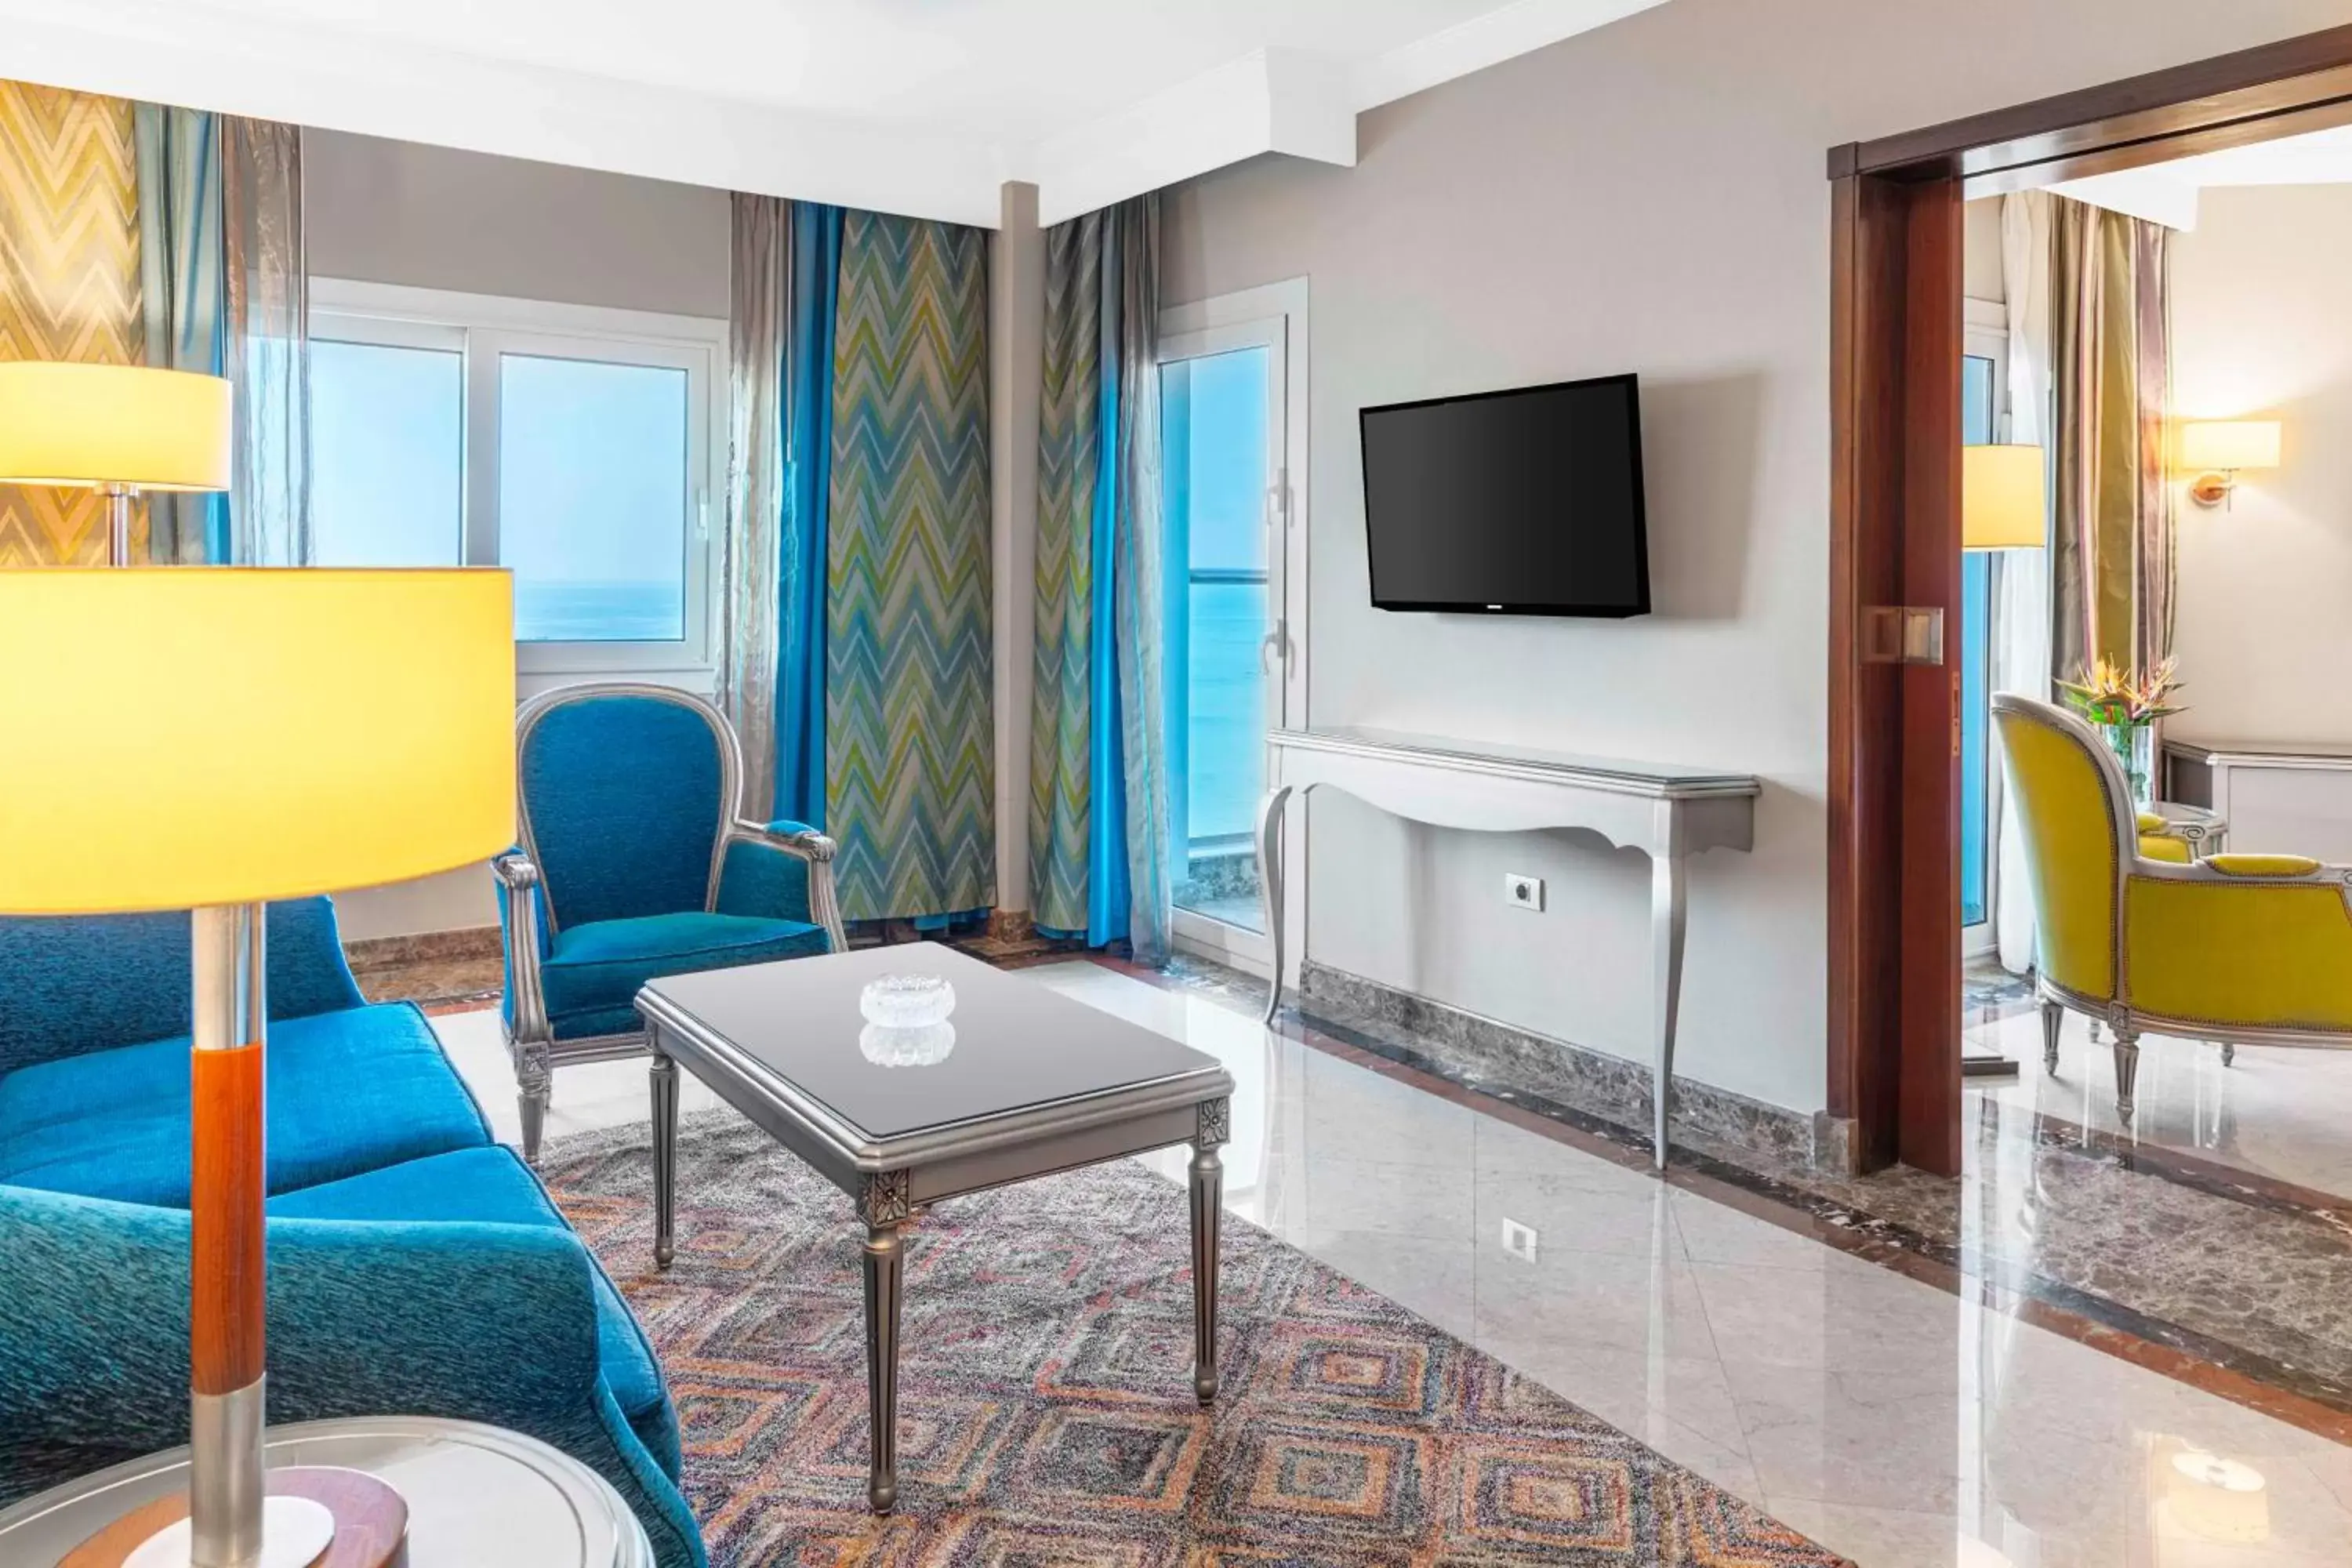 Bedroom, Seating Area in Hilton Alexandria Corniche